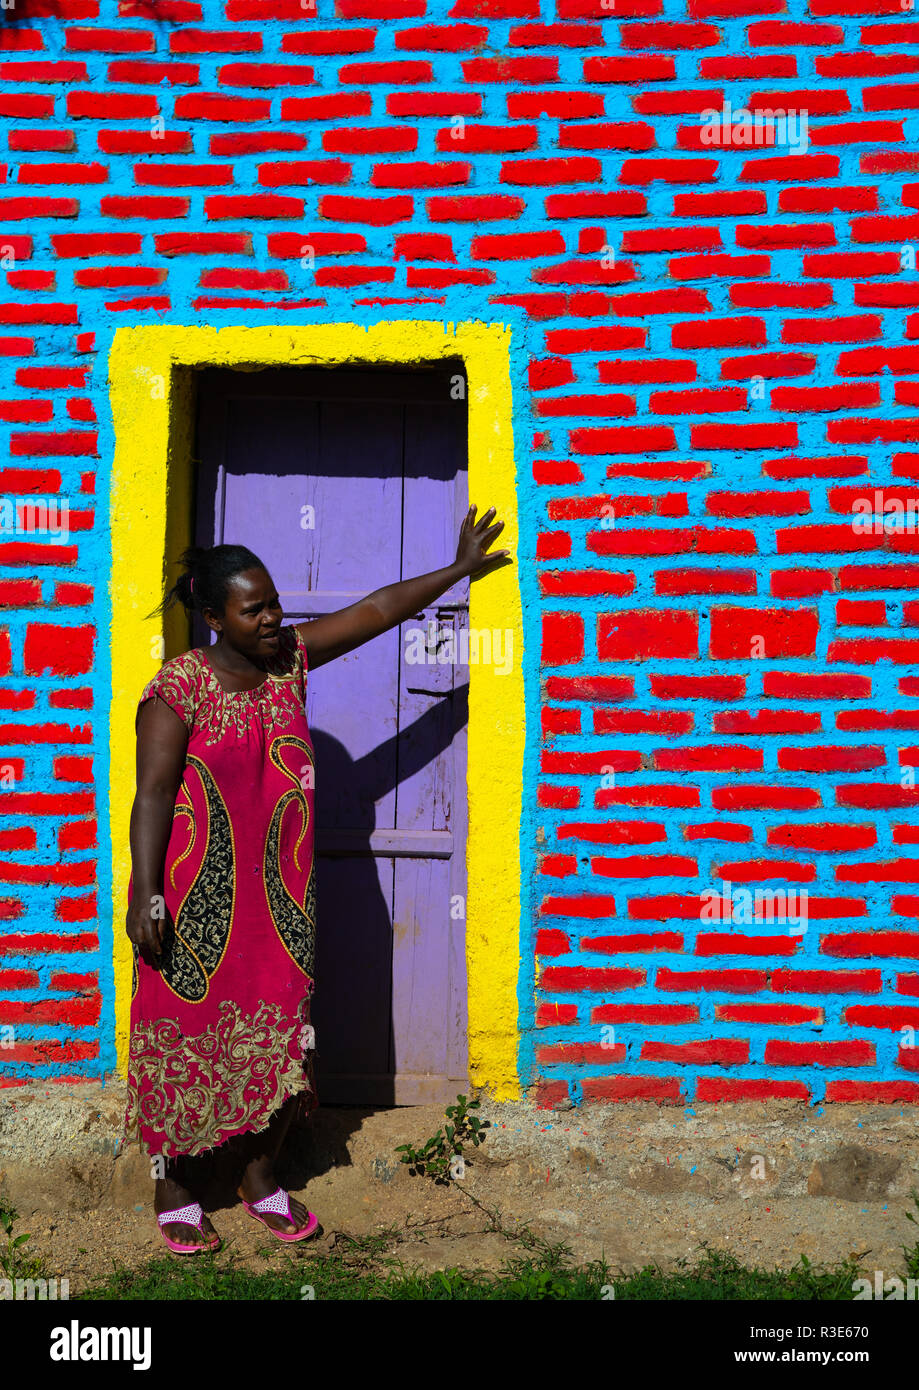 Äthiopische Frau stand vor der bunten Mauer, Sitzbank Maji, Mizan Teferi, Äthiopien Stockfoto